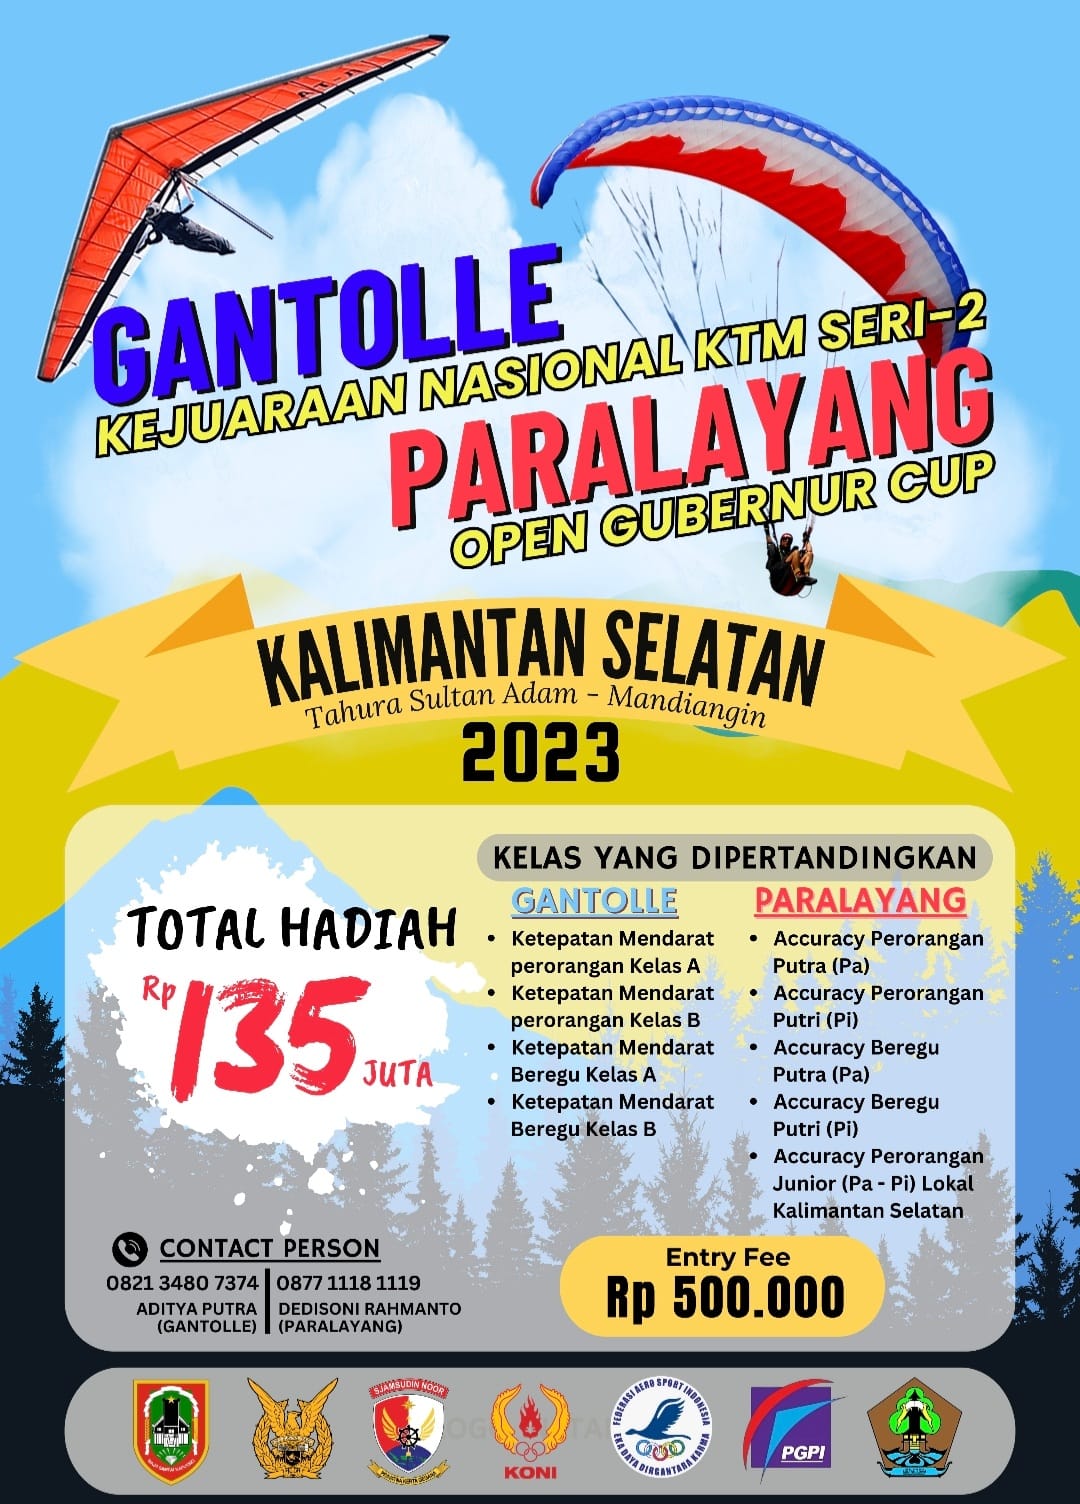 Thumbnail Gantolle Kejurnas Seri 2 dan Paralayang Open Gubernur Cup Kalimantan Selatan 2023